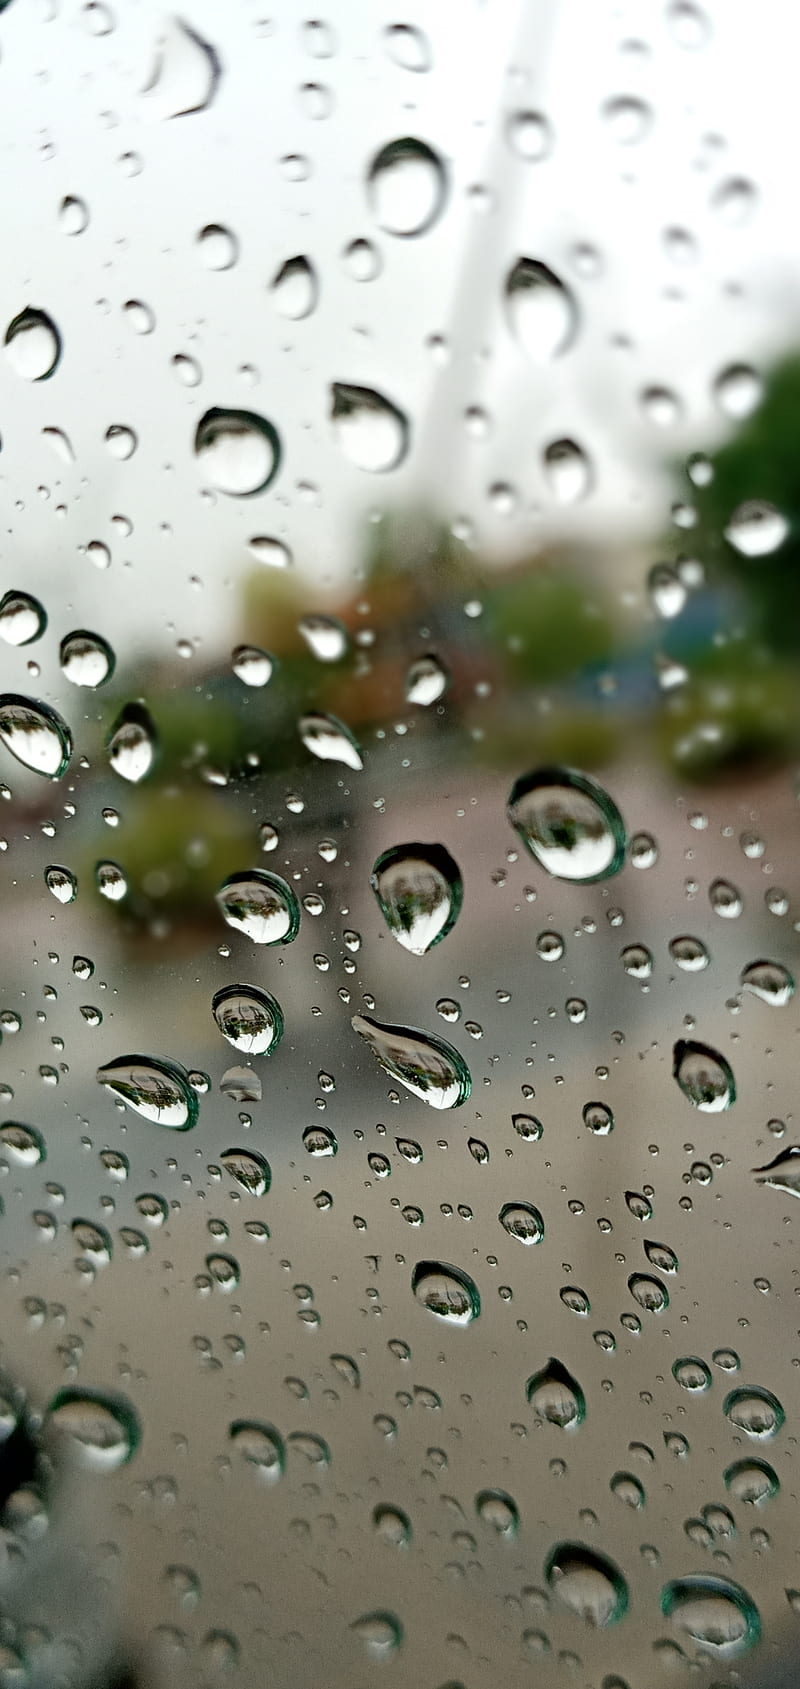 Glass, drops, rain, screen, HD mobile wallpaper | Peakpx